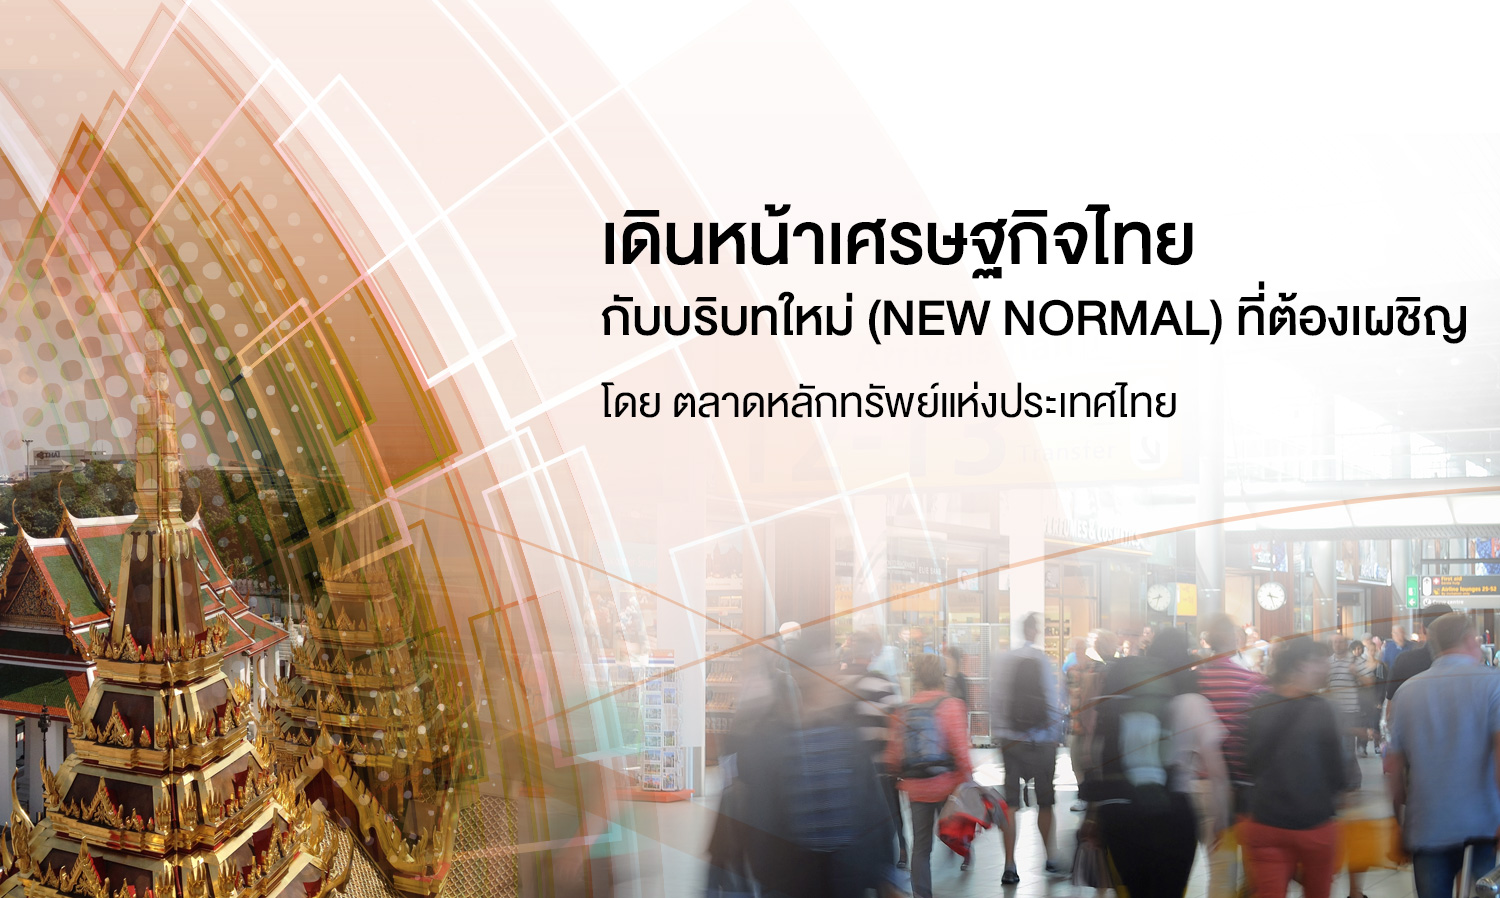 เดินหน้าเศรษฐกิจไทย กับ บริบทใหม่ (new normal) ที่ต้องเผชิญ